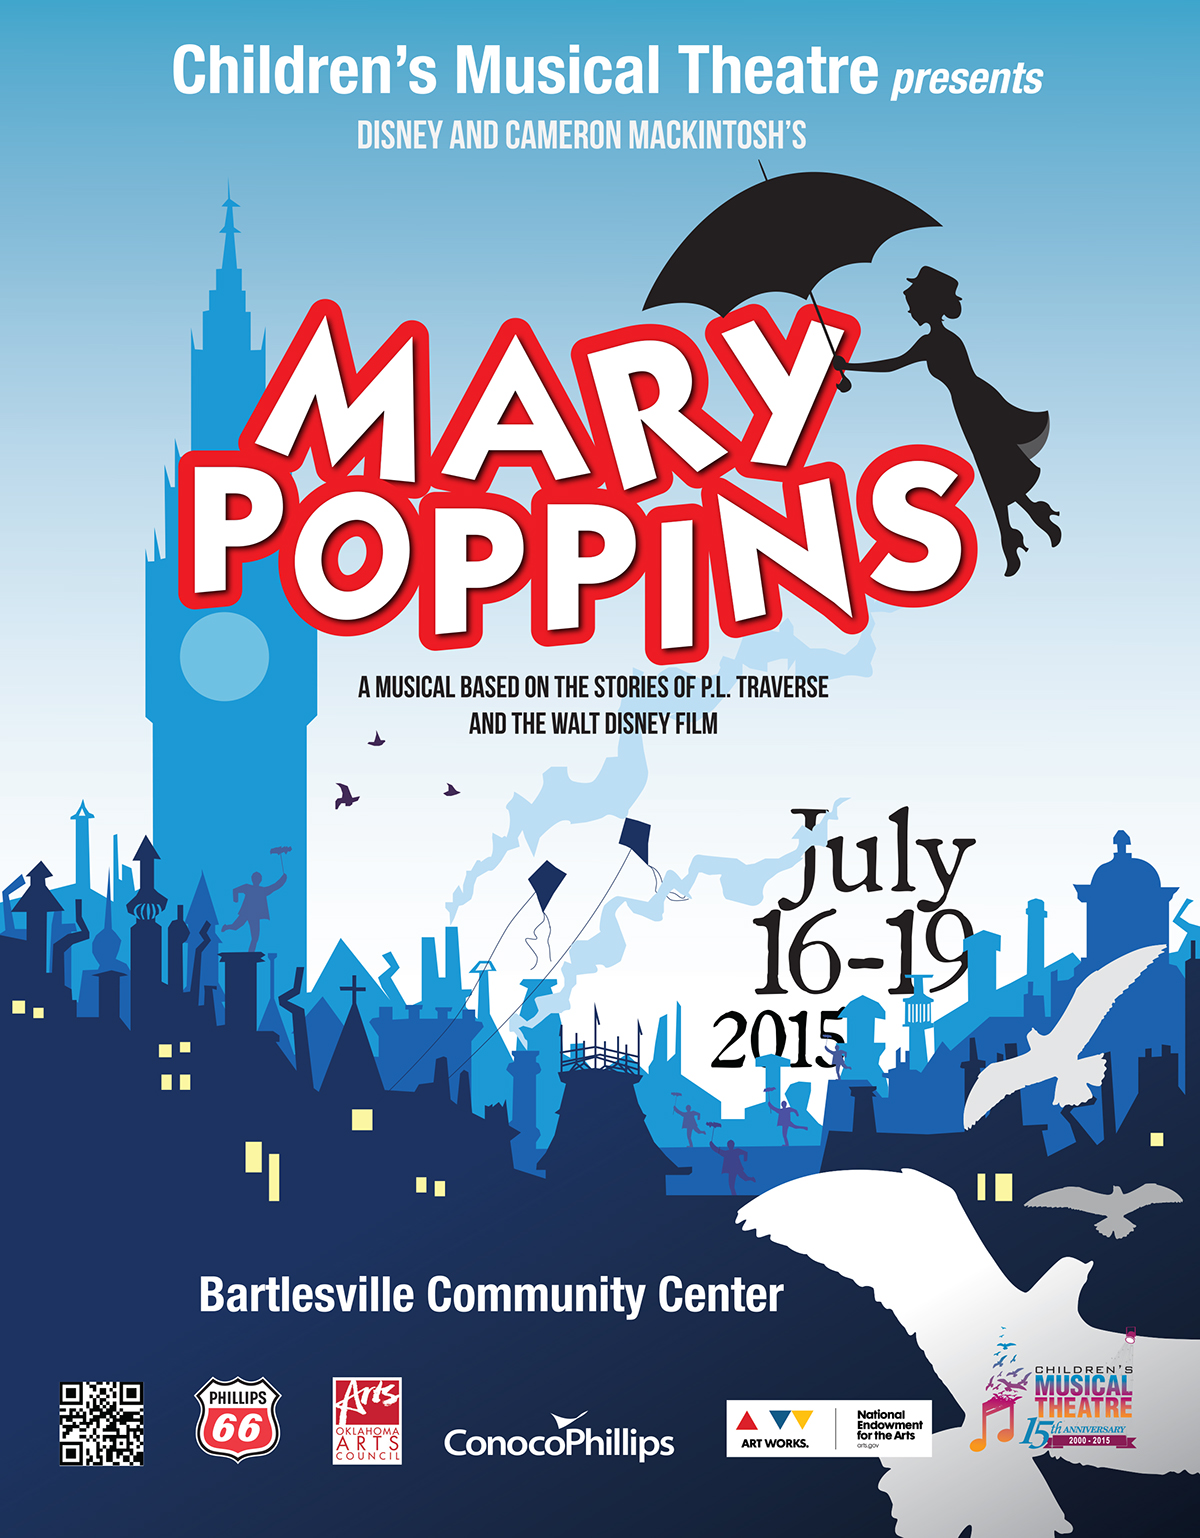 mary poppins Mary Poppins Bartlesville nestalna lidija bell lidija bell CMT play playbill play bill poster